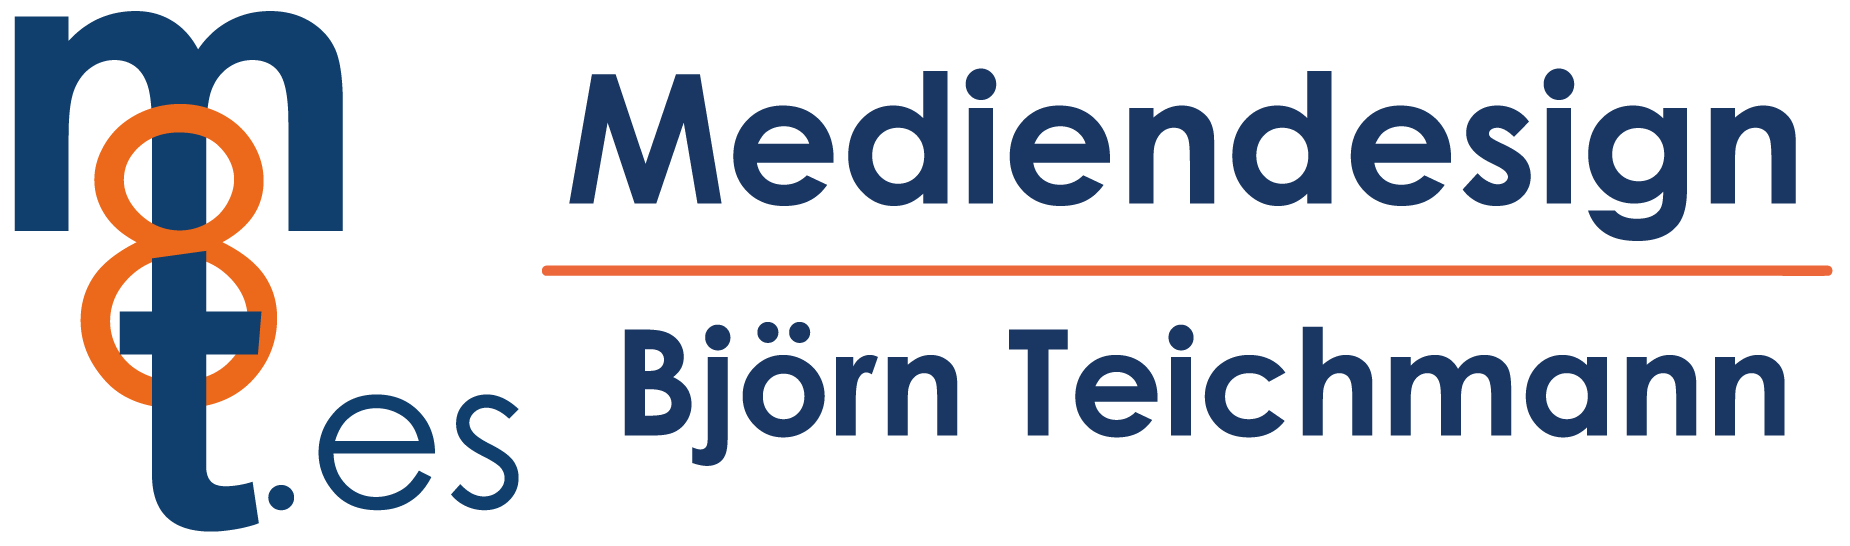 Logo_Mediendesign_Bjoern_Teichmann